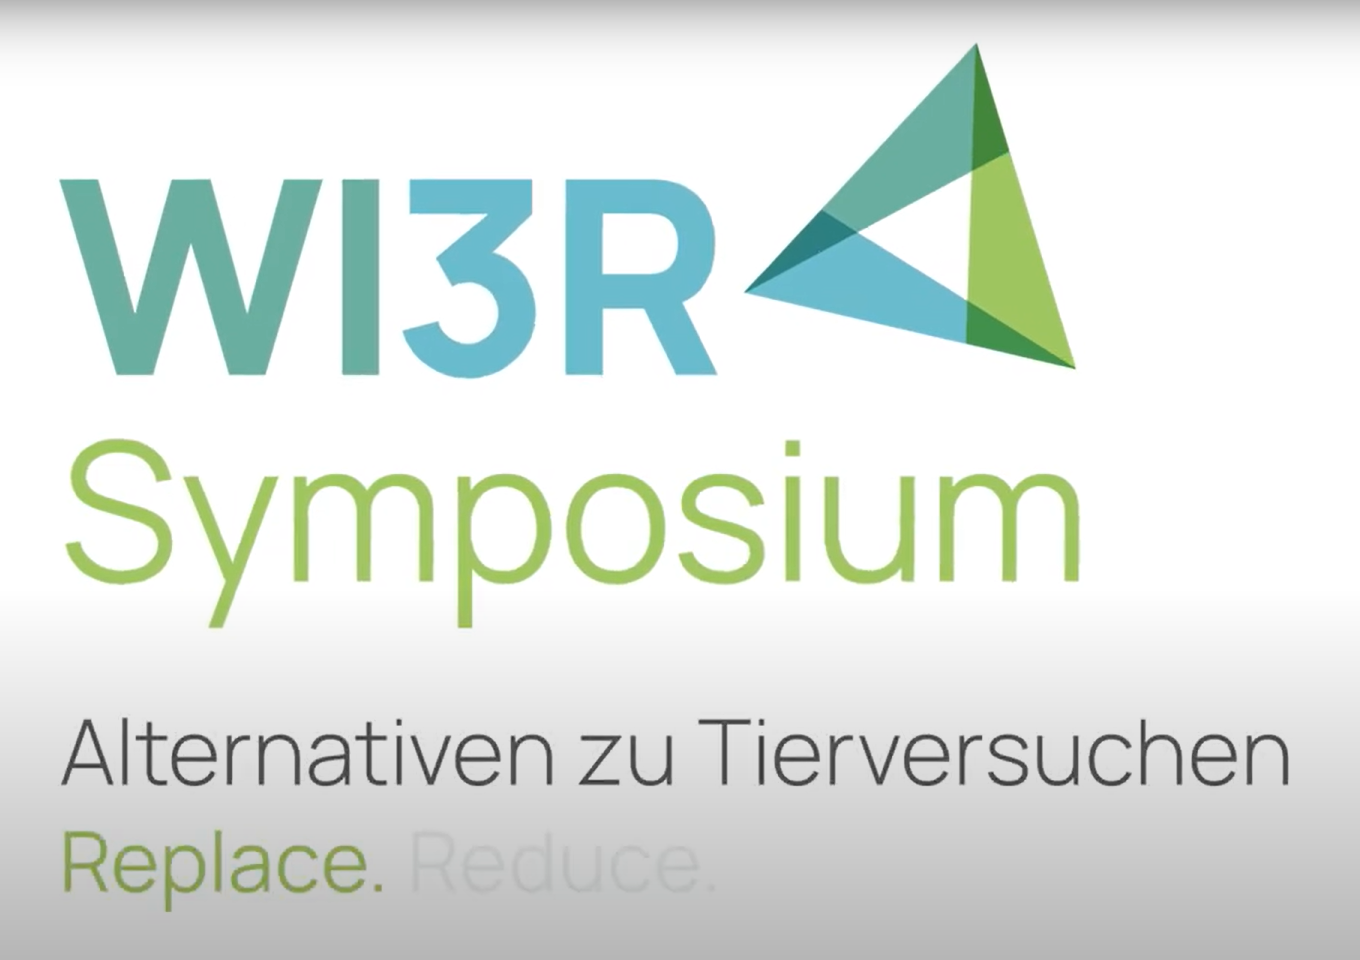 wi3r_symposium